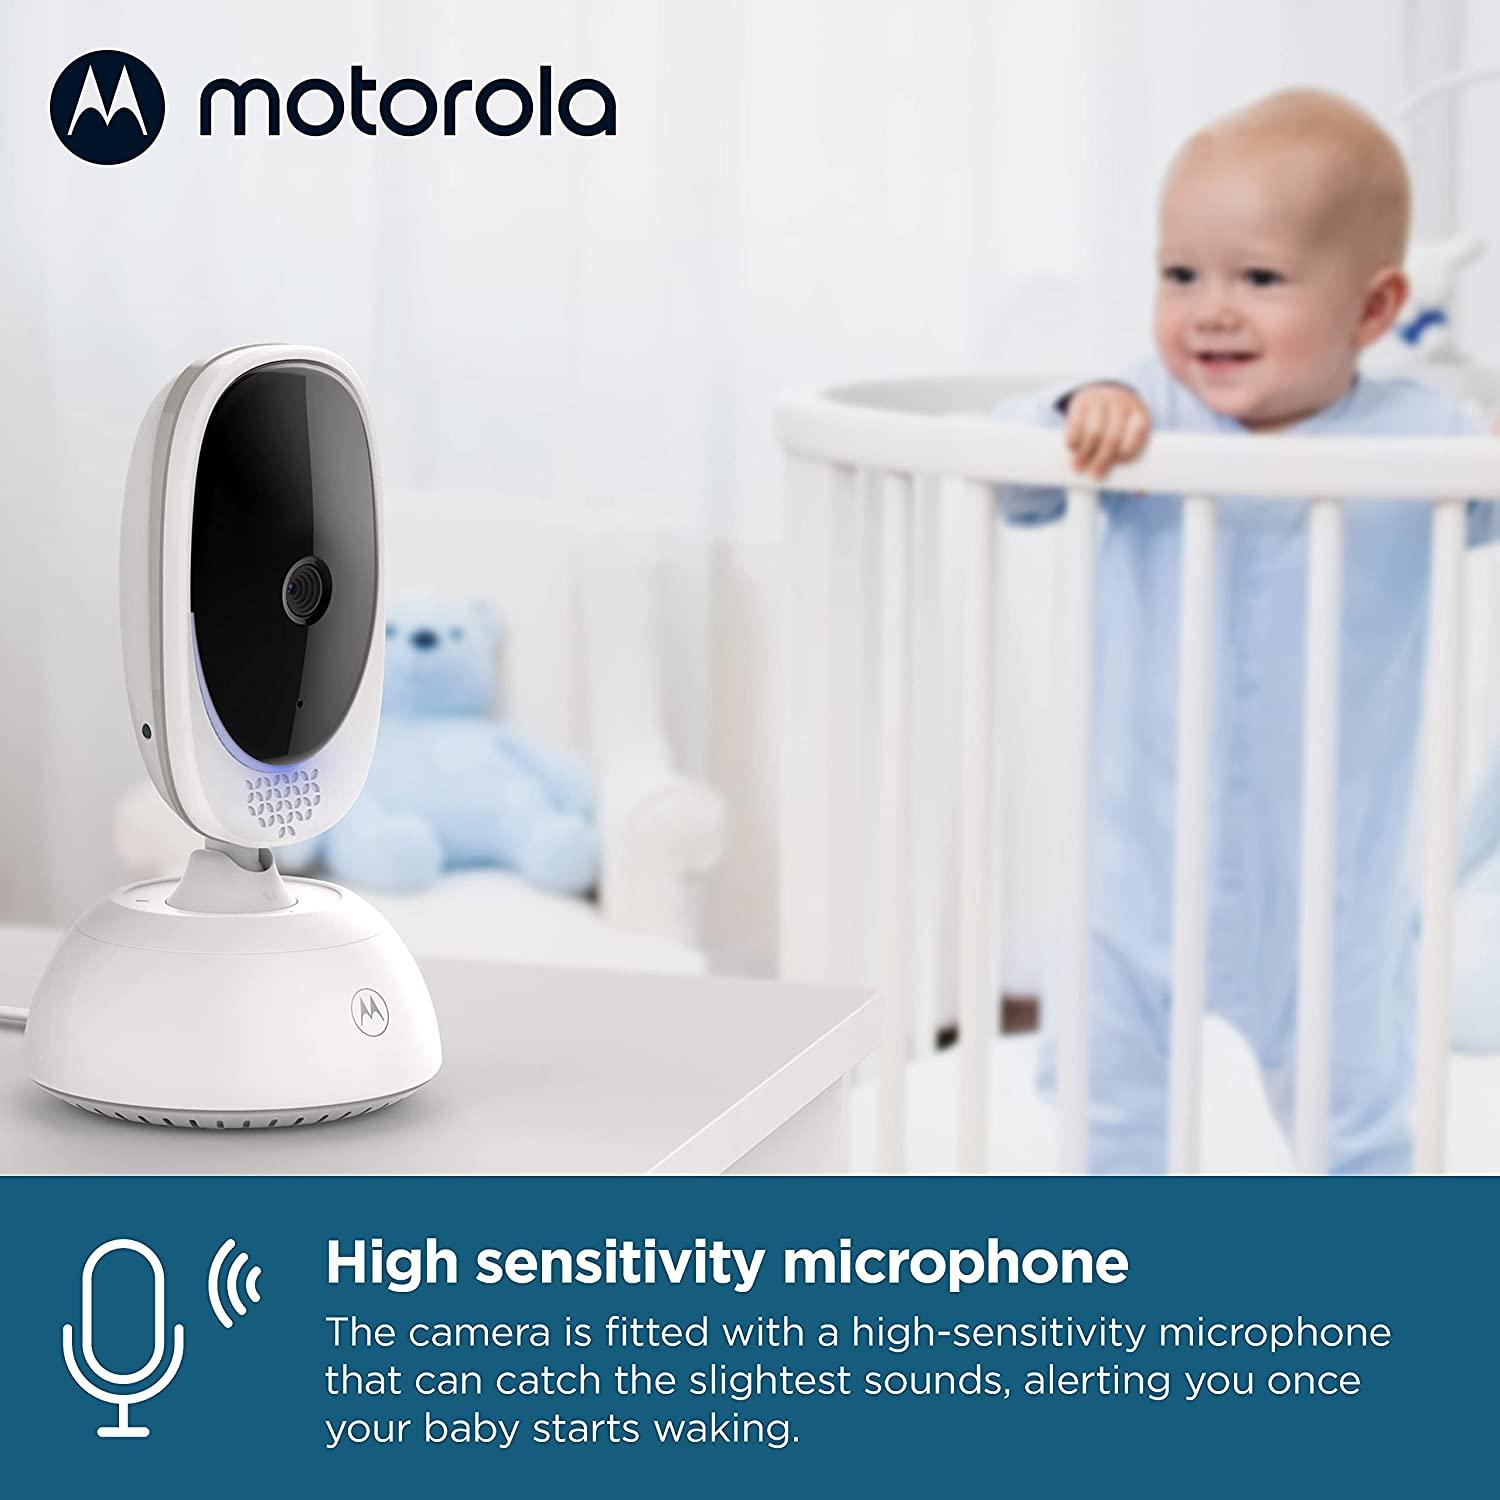 Motorola VM50G 5 Motorized Pan/Tilt Video Baby Monitor - 2 Camera